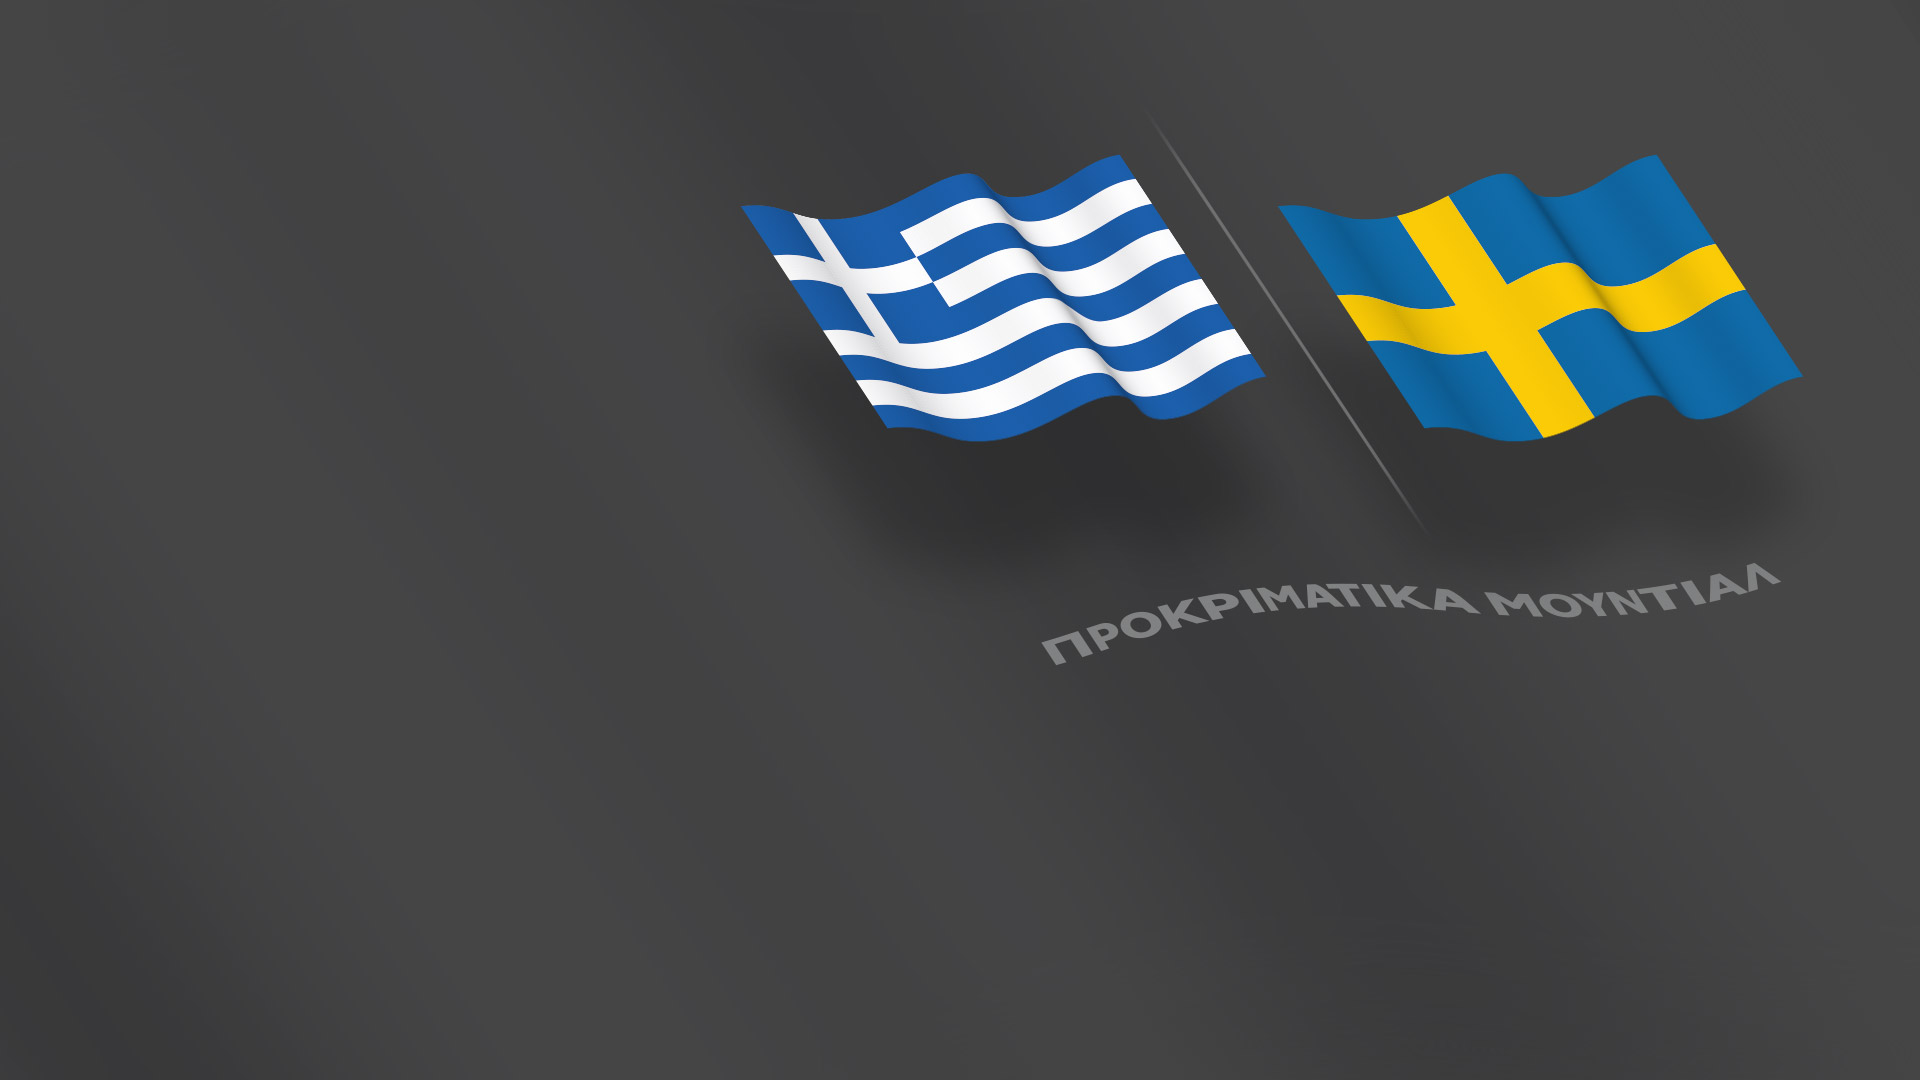 Προκριματικά Μουντιάλ - Ελλάδα-Σουηδία